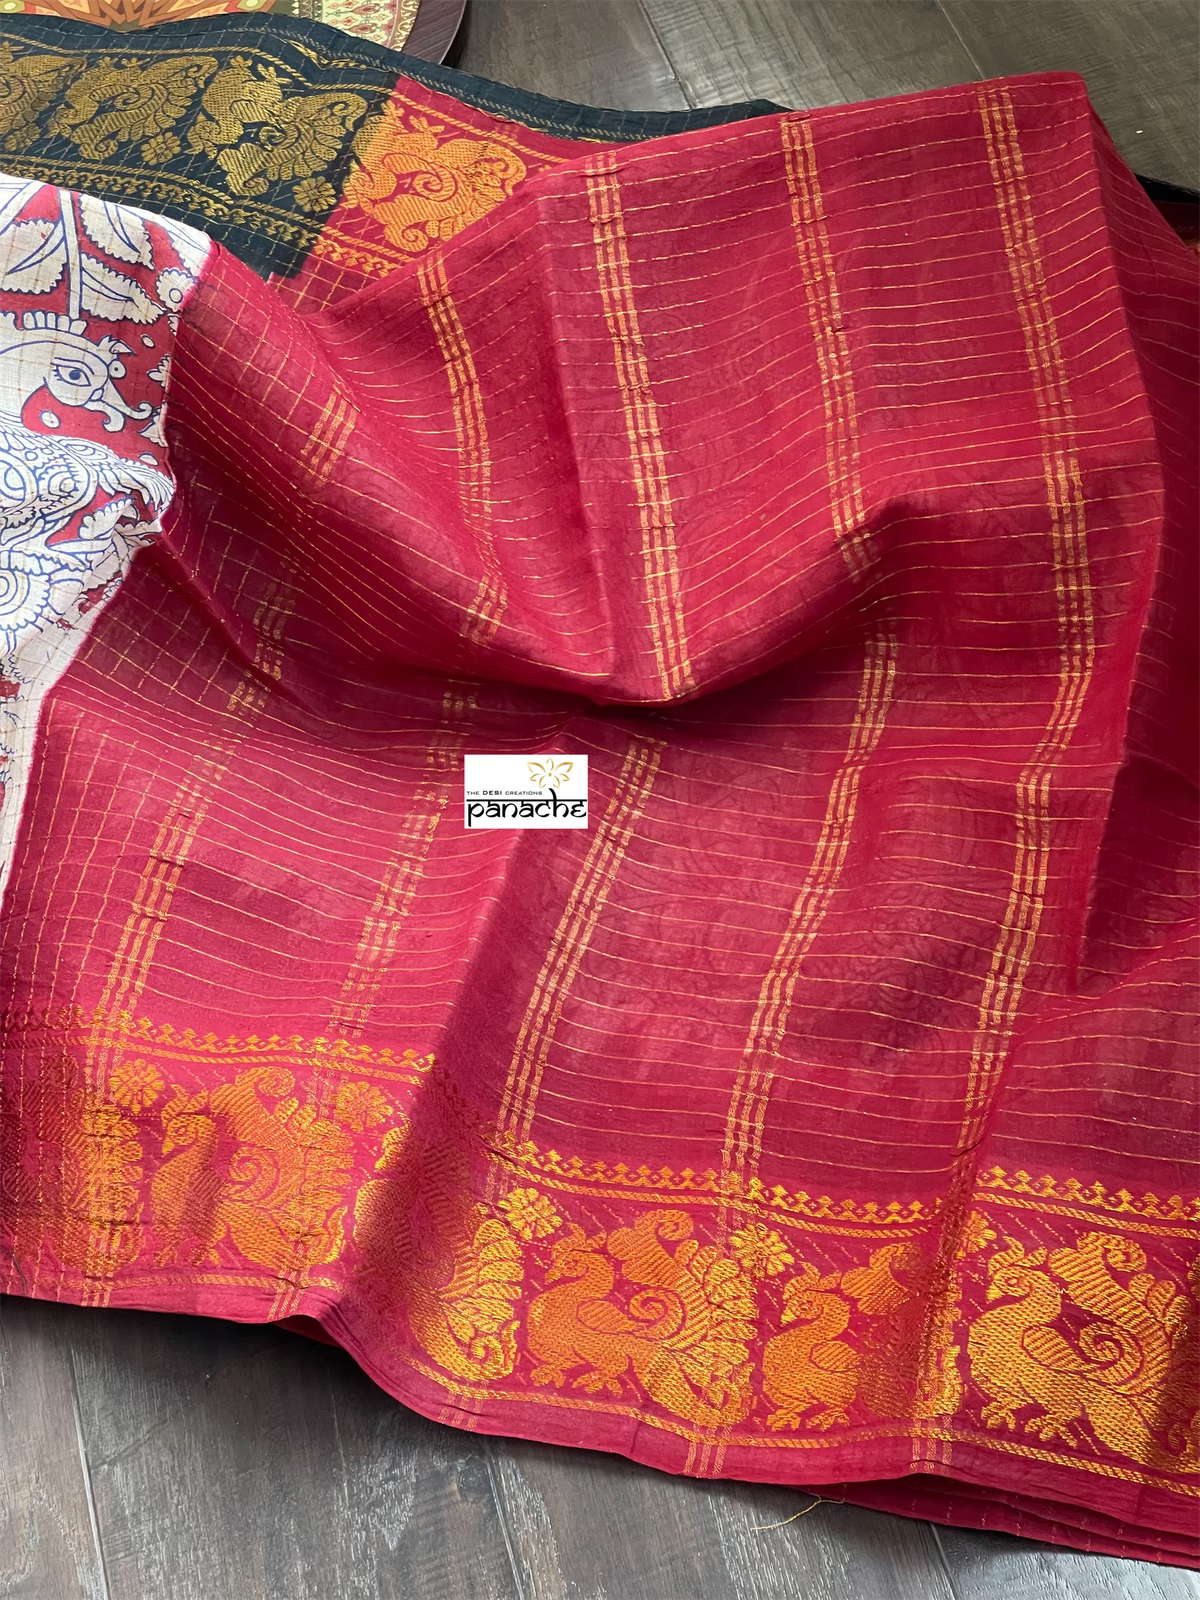 Madurai Cotton - Beige Red Black